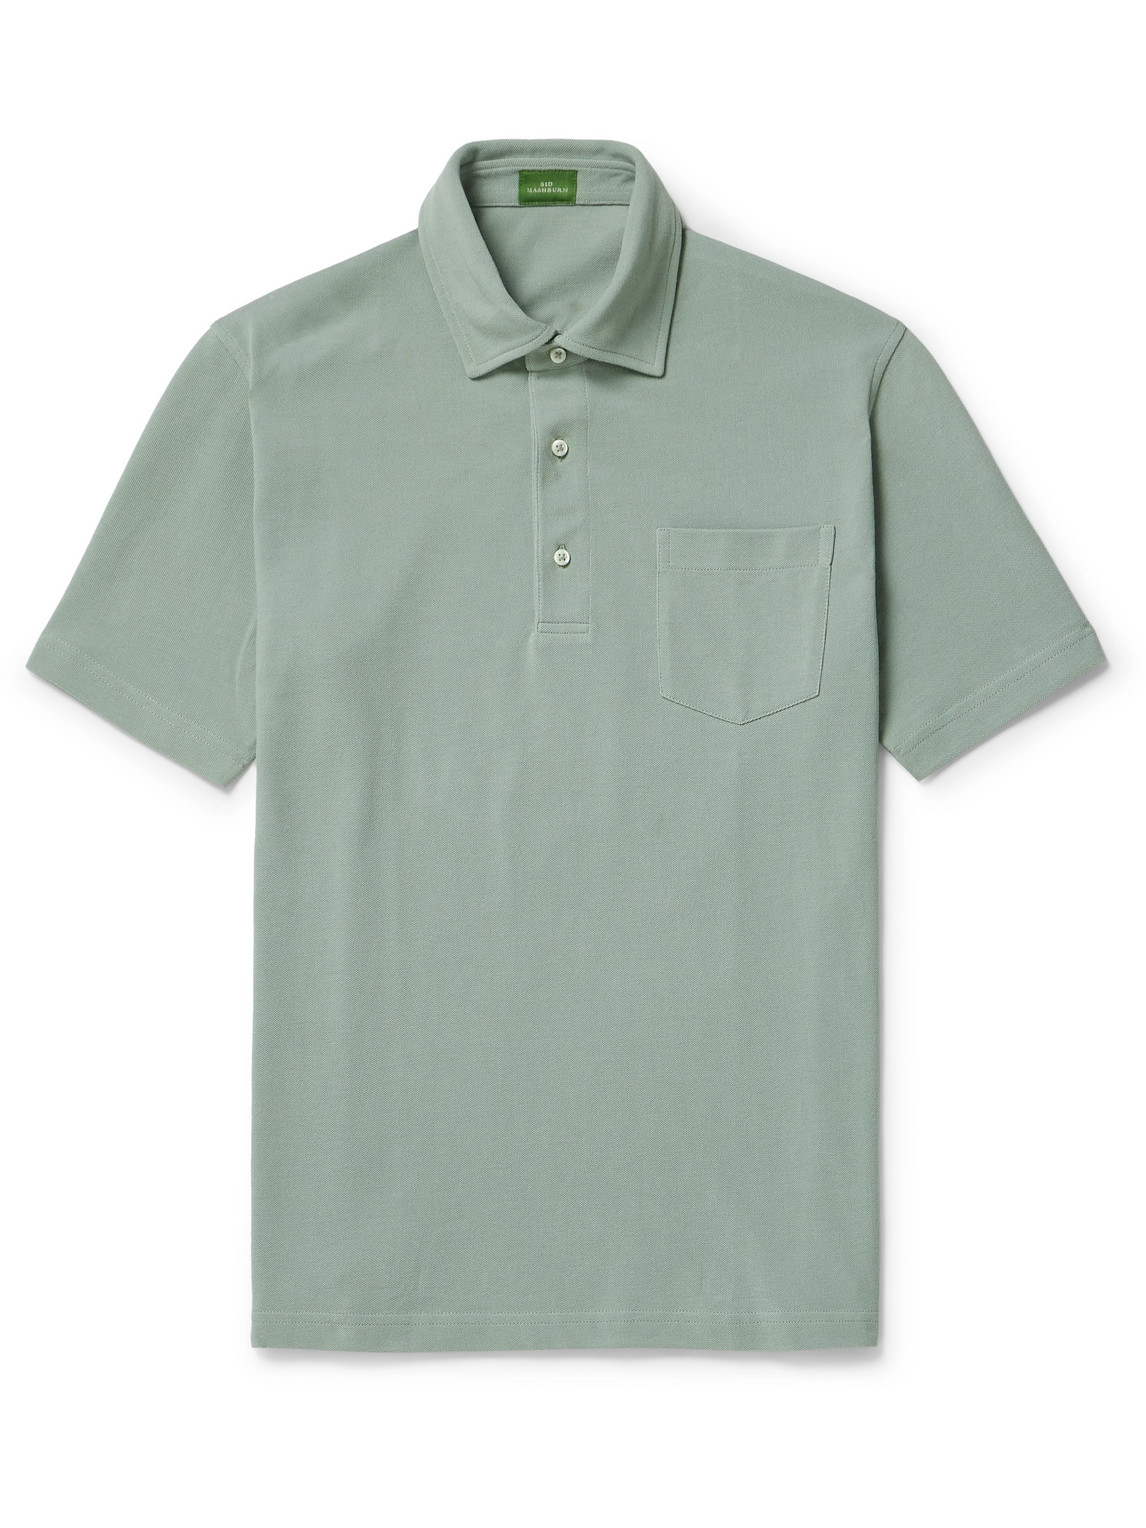 Pima Cotton-Piqué Polo Shirt